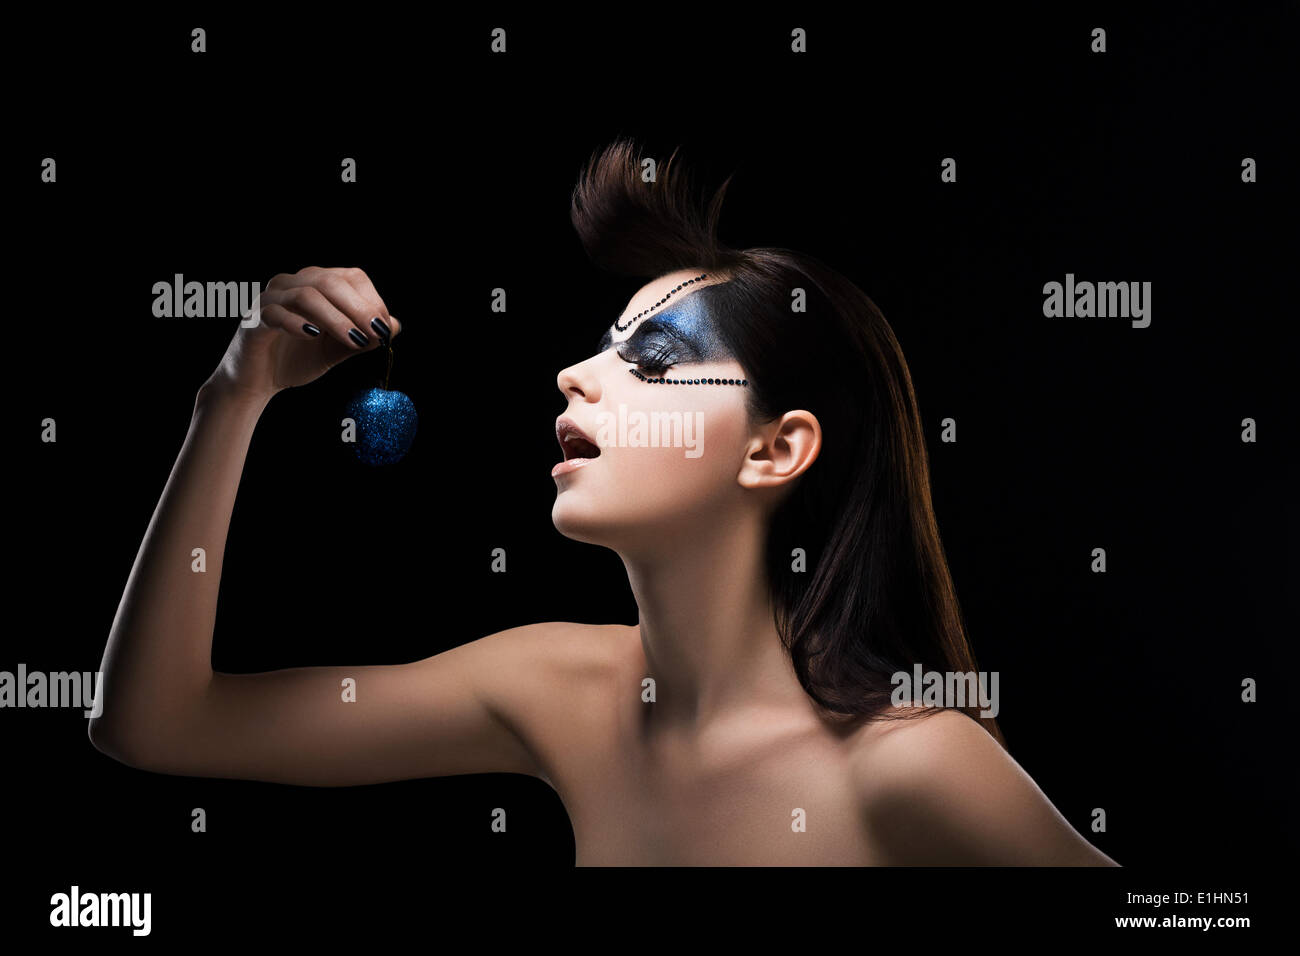 La fantasia. Immagine di fantasia donna in possesso di una sfera blu in mano. Ispirazione Foto Stock